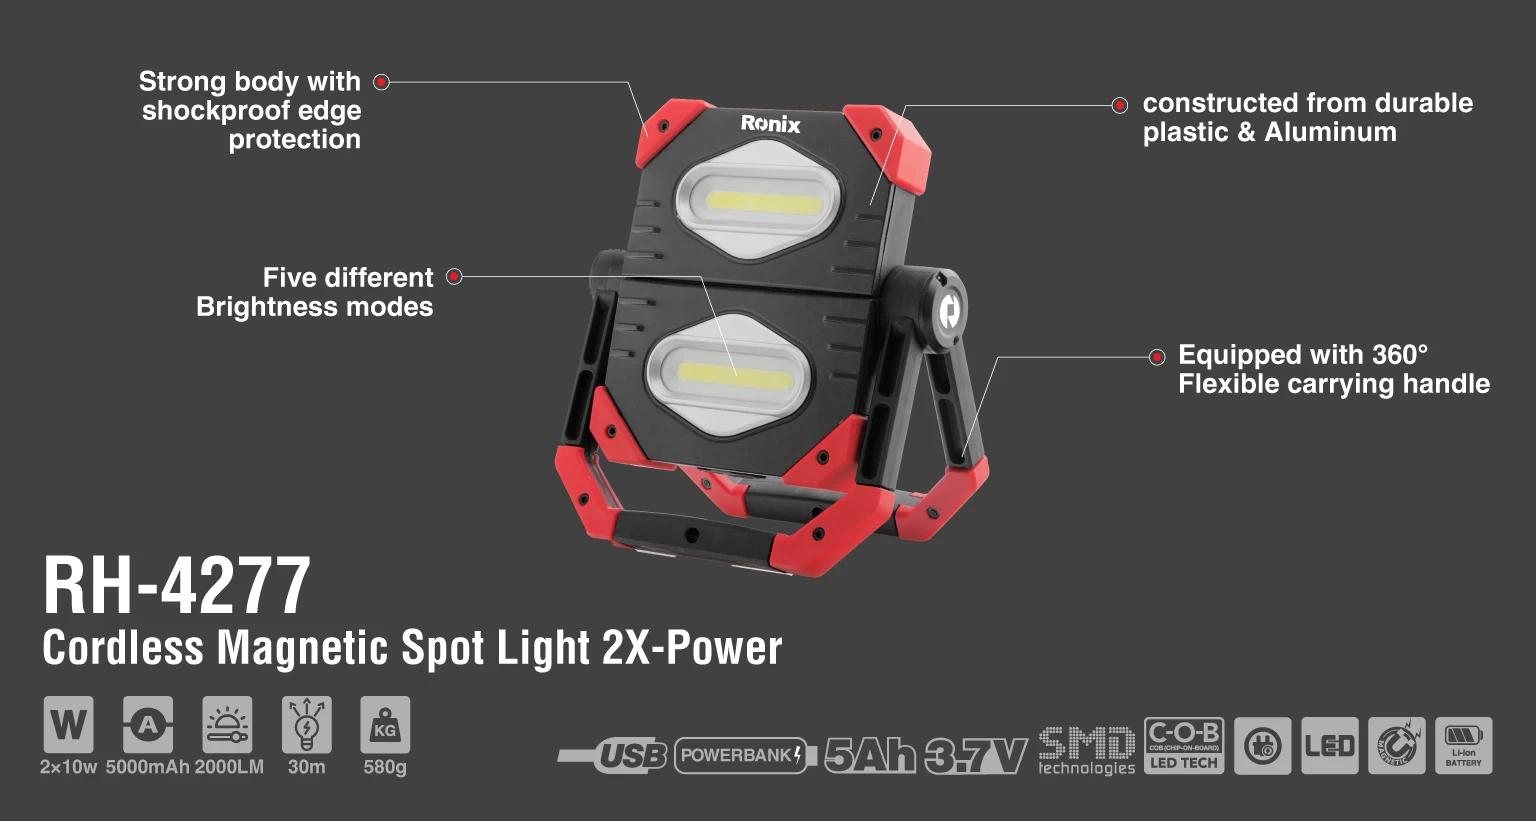 Cordless Magnetic spot light 2X-power 2000lm_details